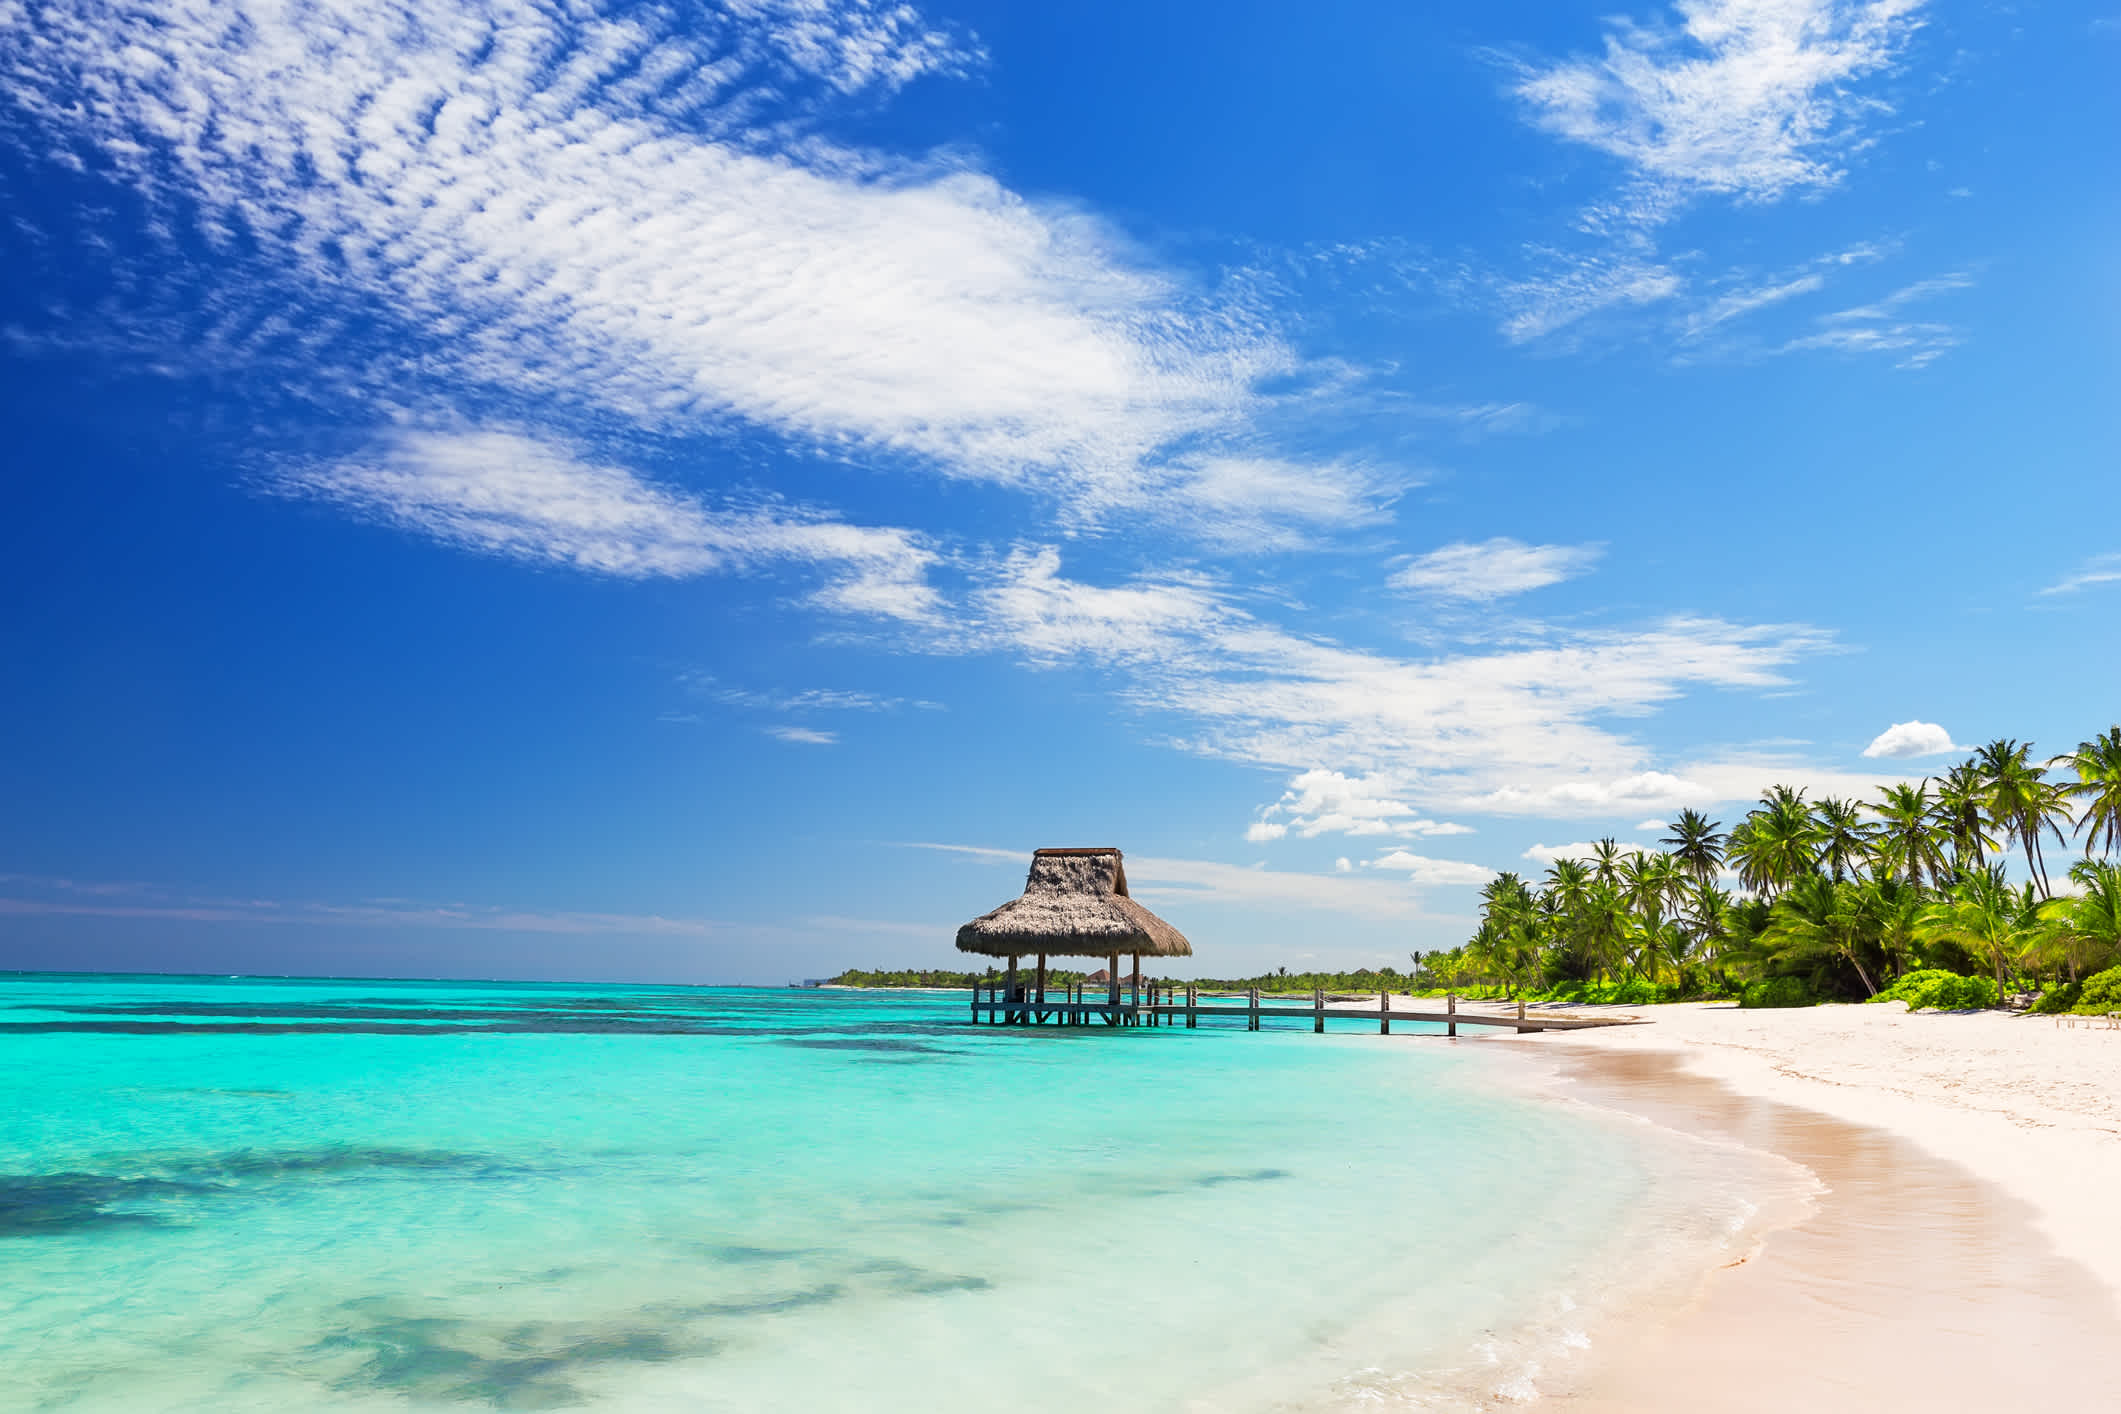 Profitez d'un décors de rêve pendant votre voyage à Punta Cana.